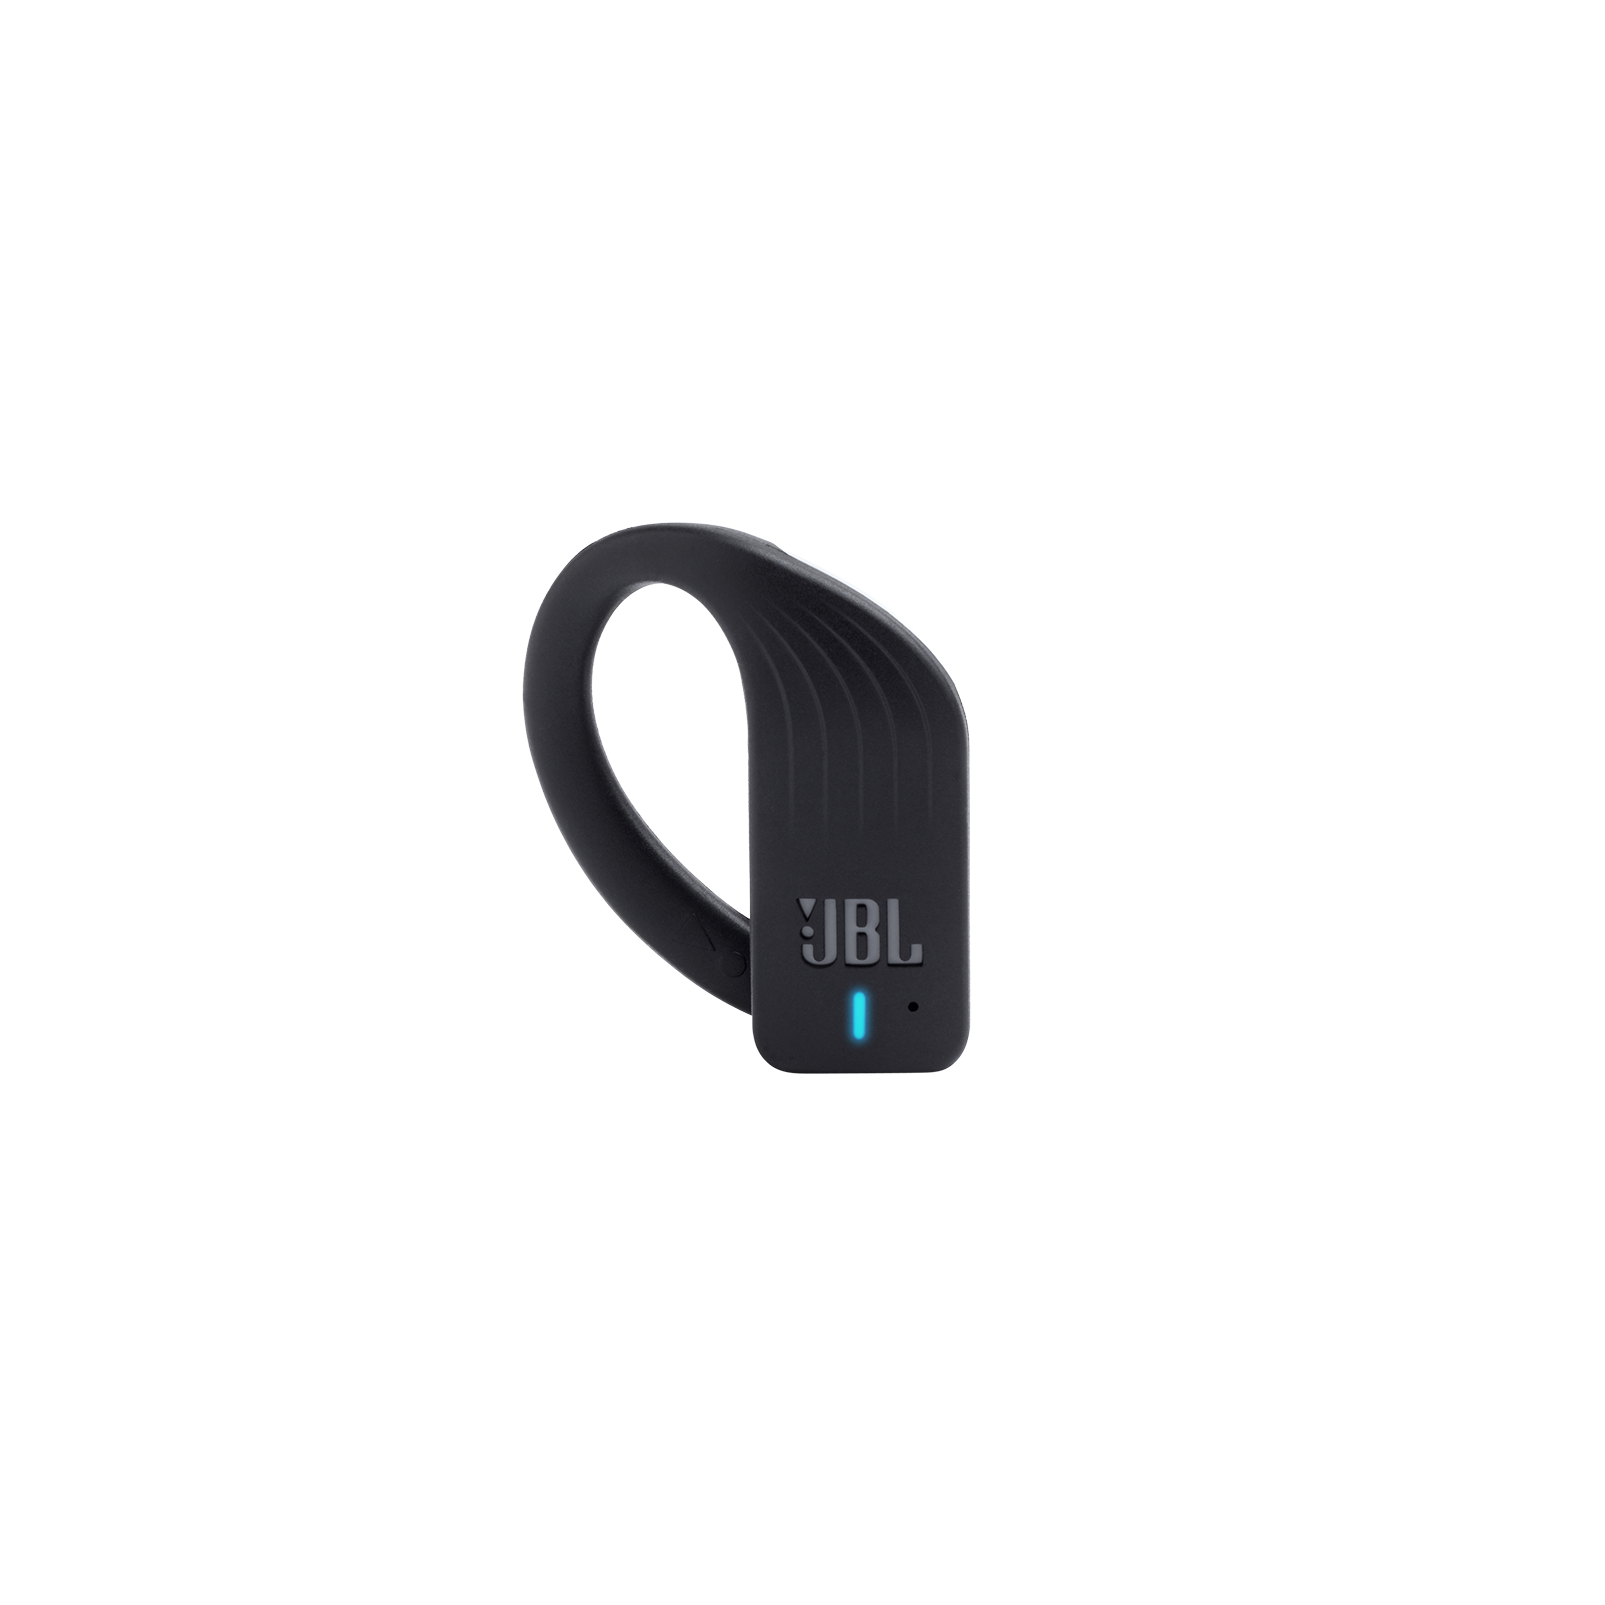 JBL Endurance PEAK - Black - Waterproof True Wireless In-Ear Sport Headphones - Detailshot 2